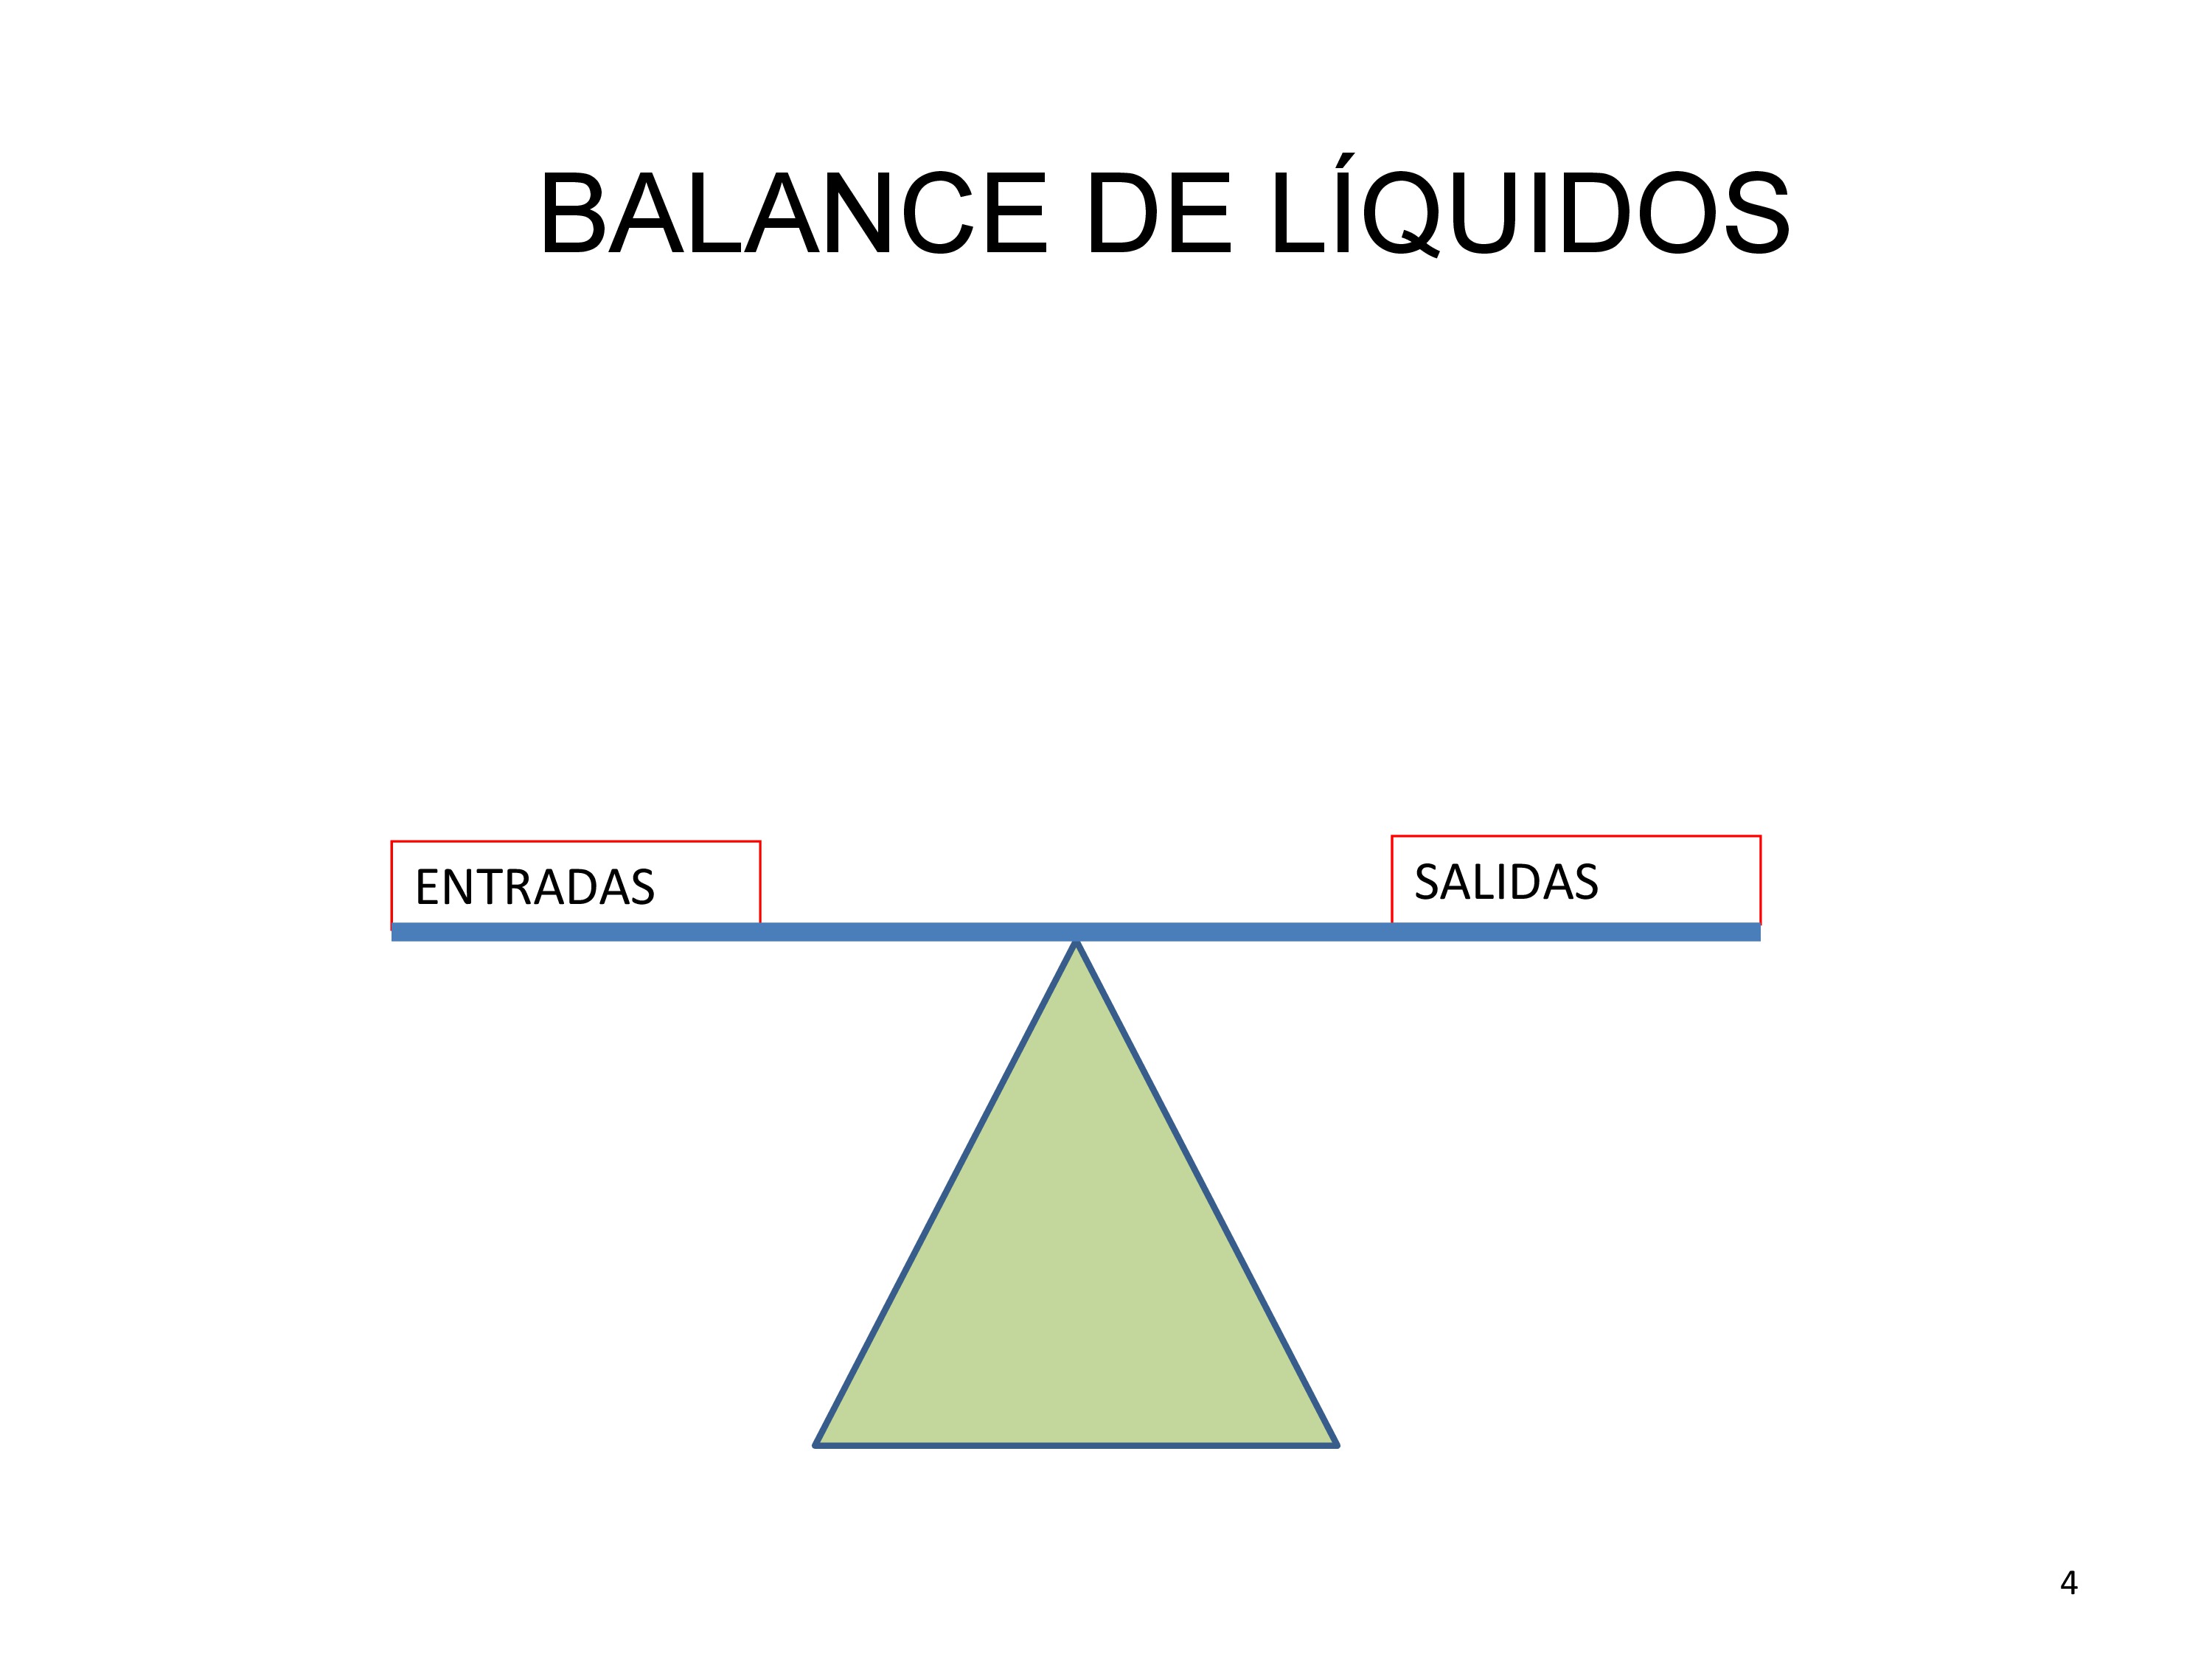 El balance de líquidos tiene en cuenta tanto las entradas como las salidas de fluidos. Normalmente en los sanos es equilibrado de forma que ambas partes son iguales.